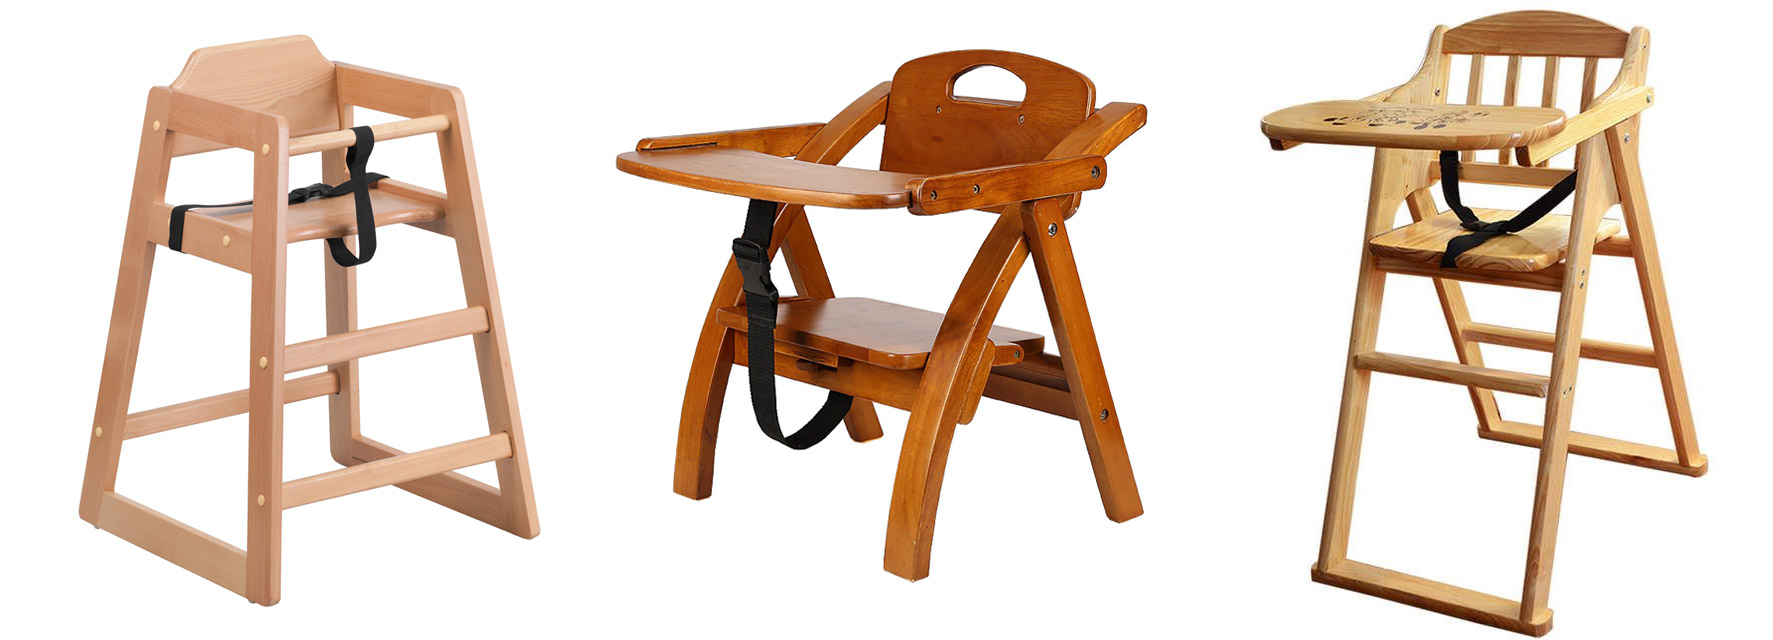 خرید صندلی کودک - صندلی کودکان چه ویژگیهایی باید داشته باشند - ویژگی های صندلی کودک - راهنمای خرید صندلی کودک